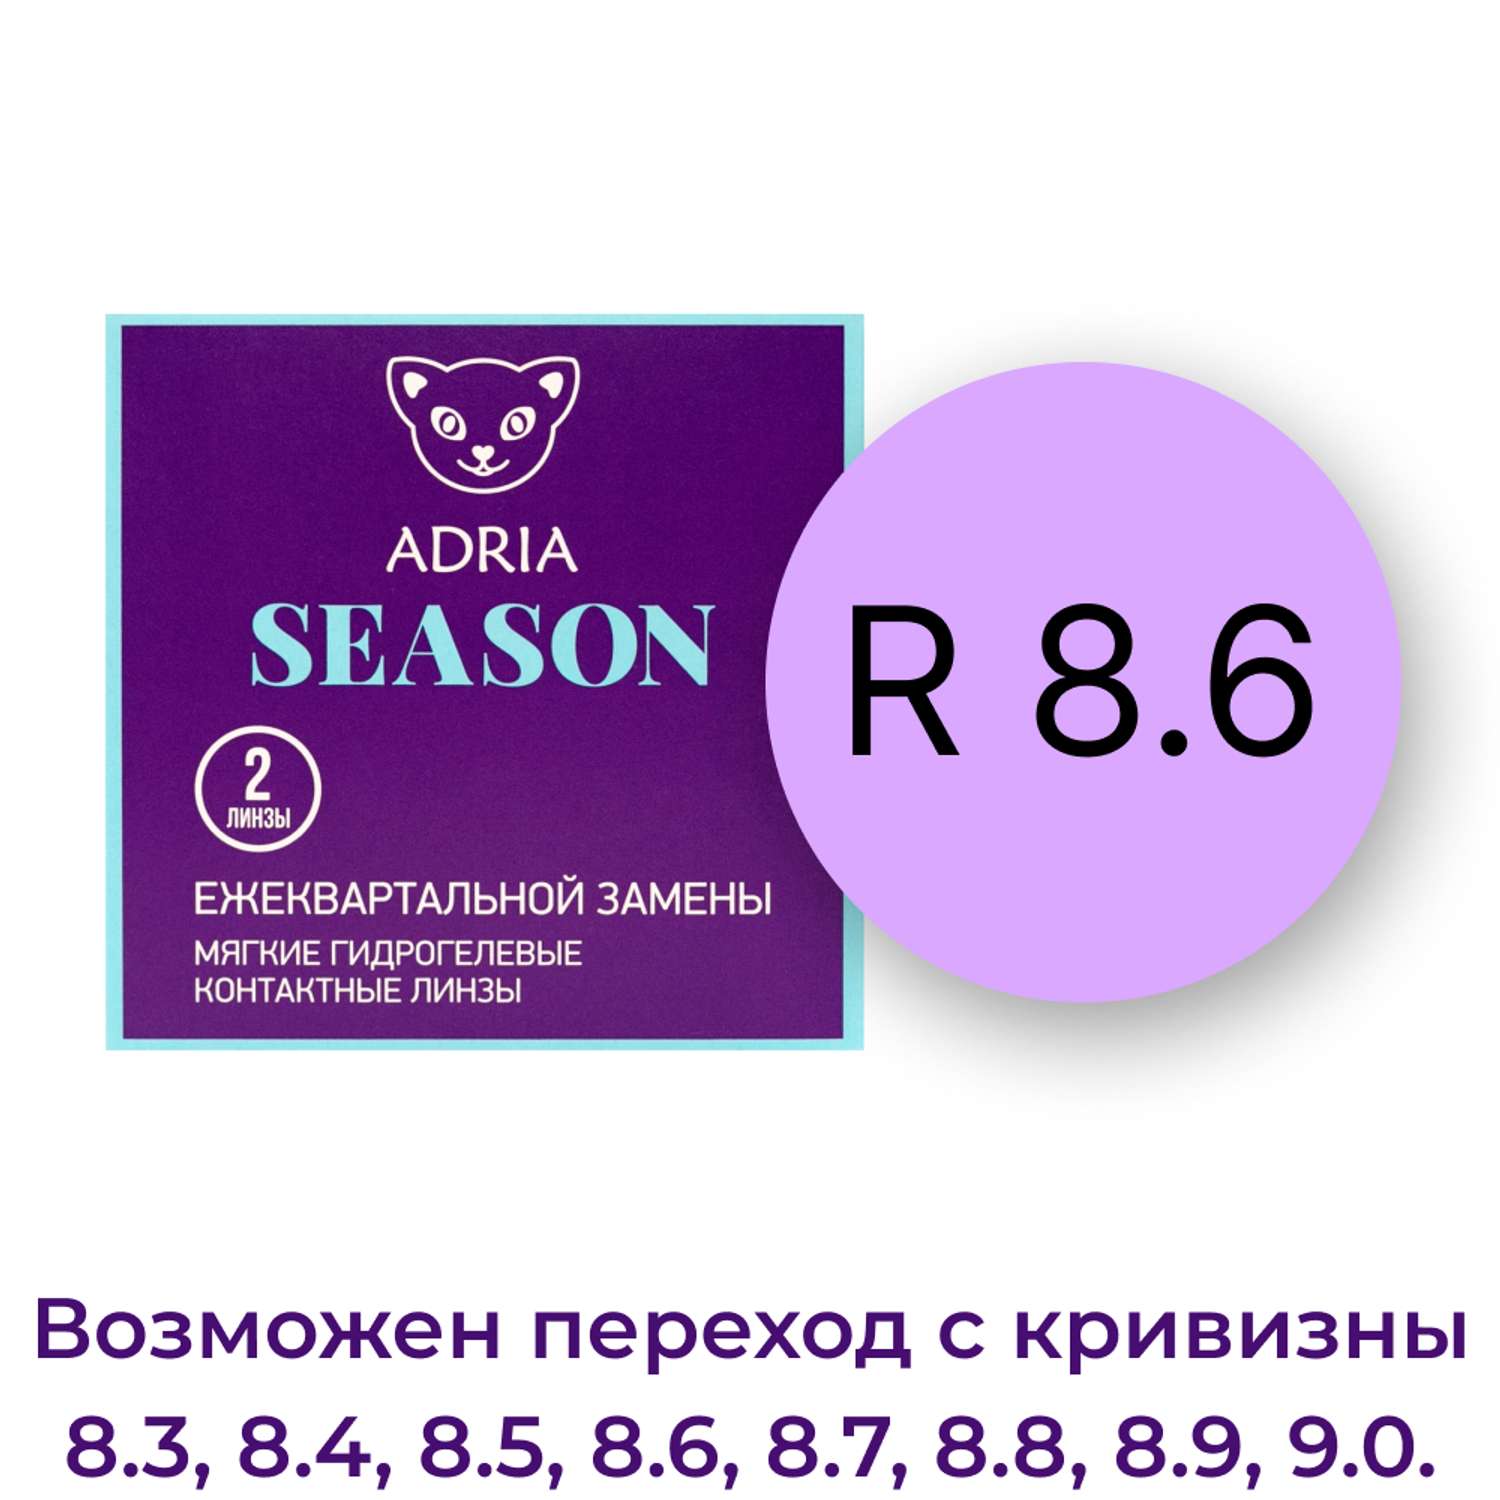 Контактные линзы ADRIA Season 2 линзы R 8.6 -1.00 - фото 3